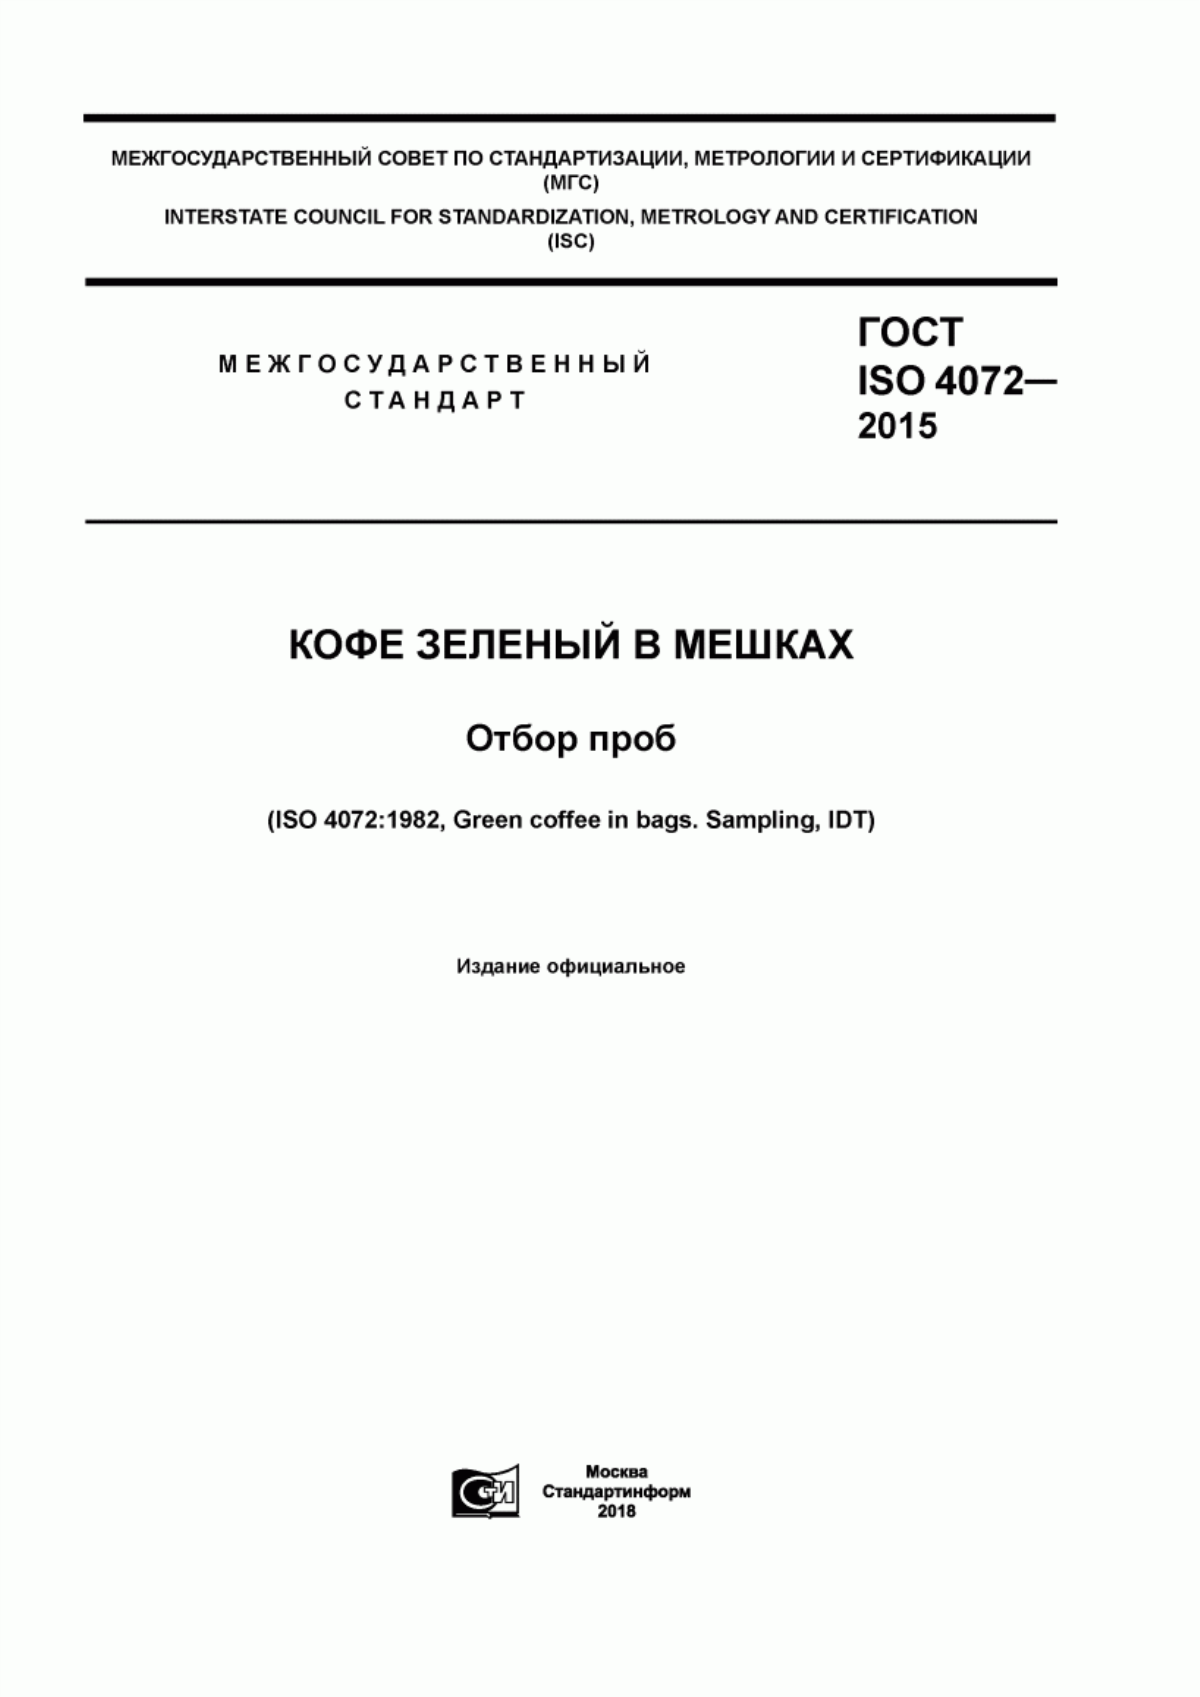 ГОСТ ISO 4072-2015 Кофе зеленый в мешках. Отбор проб